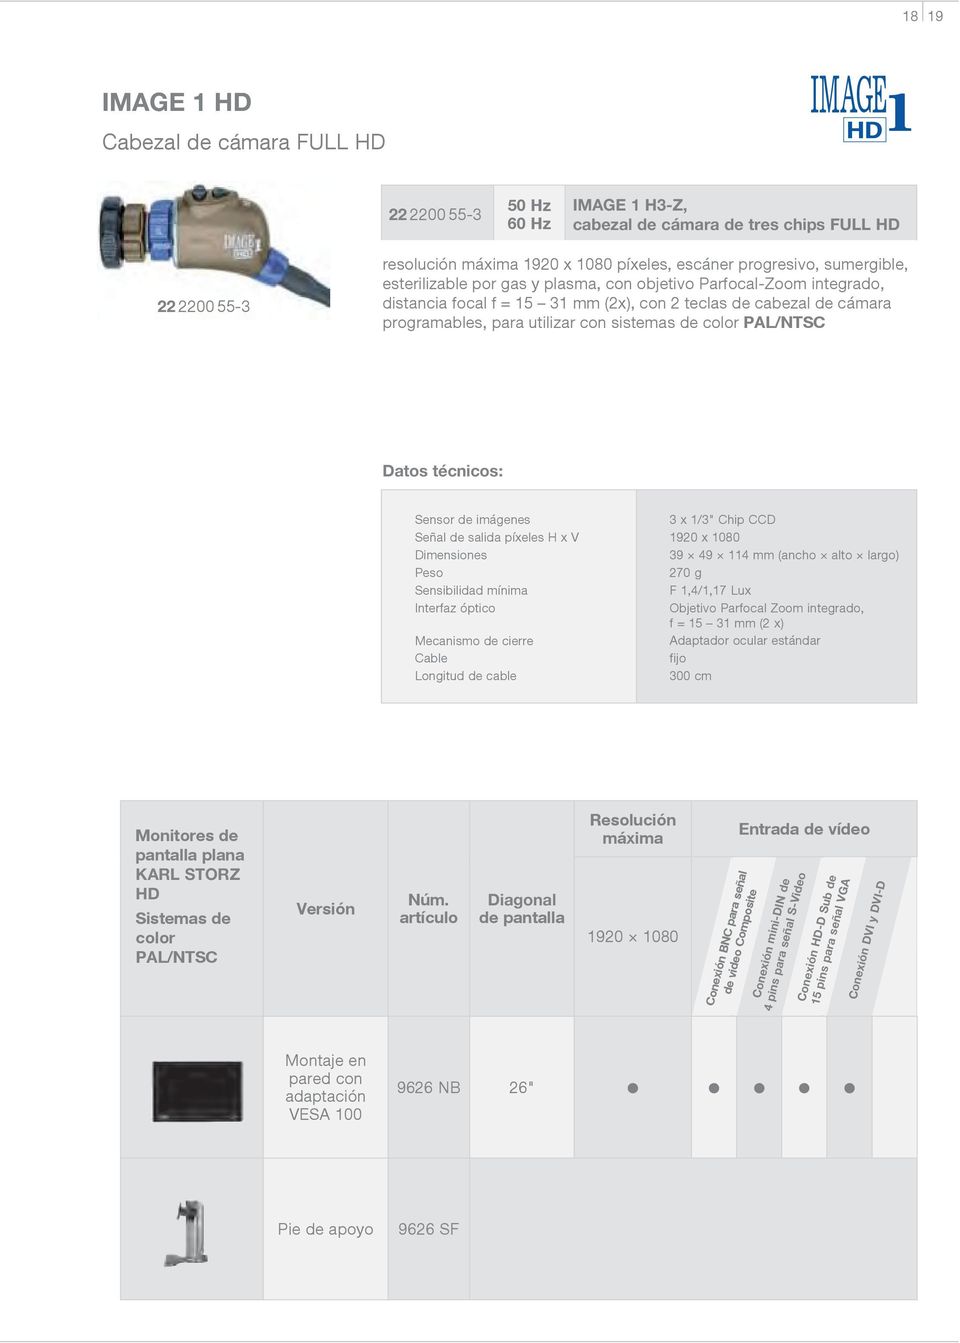 Peso Sensibilidad mínima Interfaz óptico Mecanismo de cierre Cable Longitud de cable 3 x 1/3" Chip CCD 1920 x 1080 39 49 114 mm (ancho alto largo) 270 g F 1,4/1,17 Lux Objetivo Parfocal Zoom